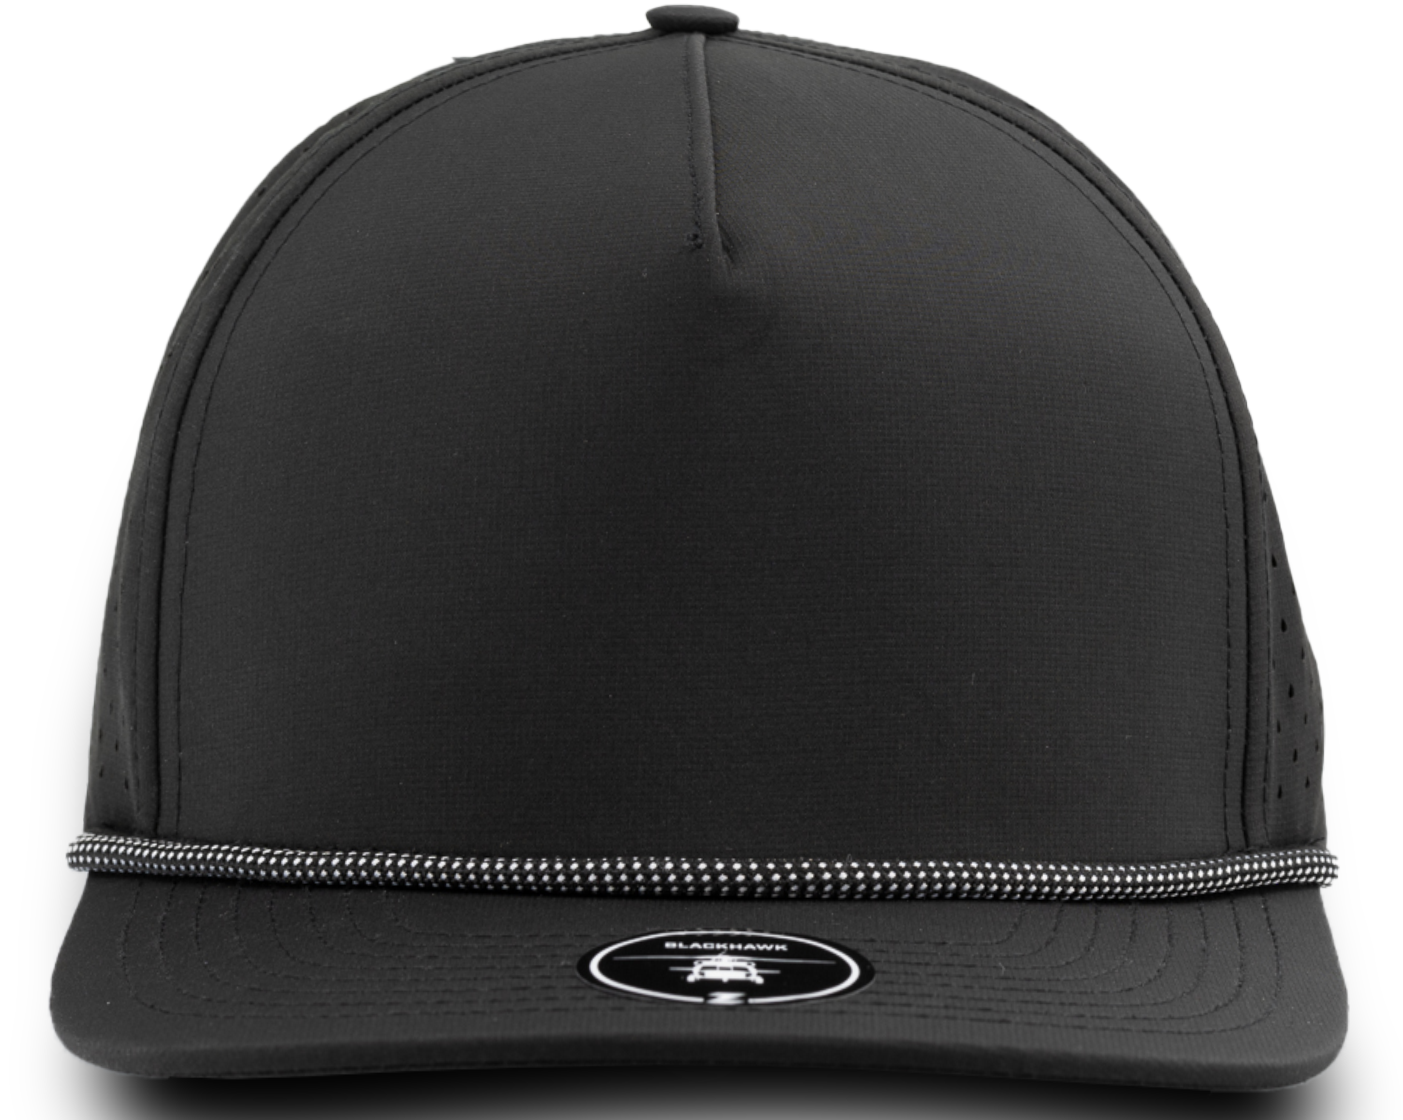 BLACKHAWK R+ Custom Hat (Rope Brim)-Water Repellent hat-Zapped Headwear-Black/ White Grid Rope-Zapped Headwear- golf hat - 5 panel hats - custom 5 panel - custom rope hat